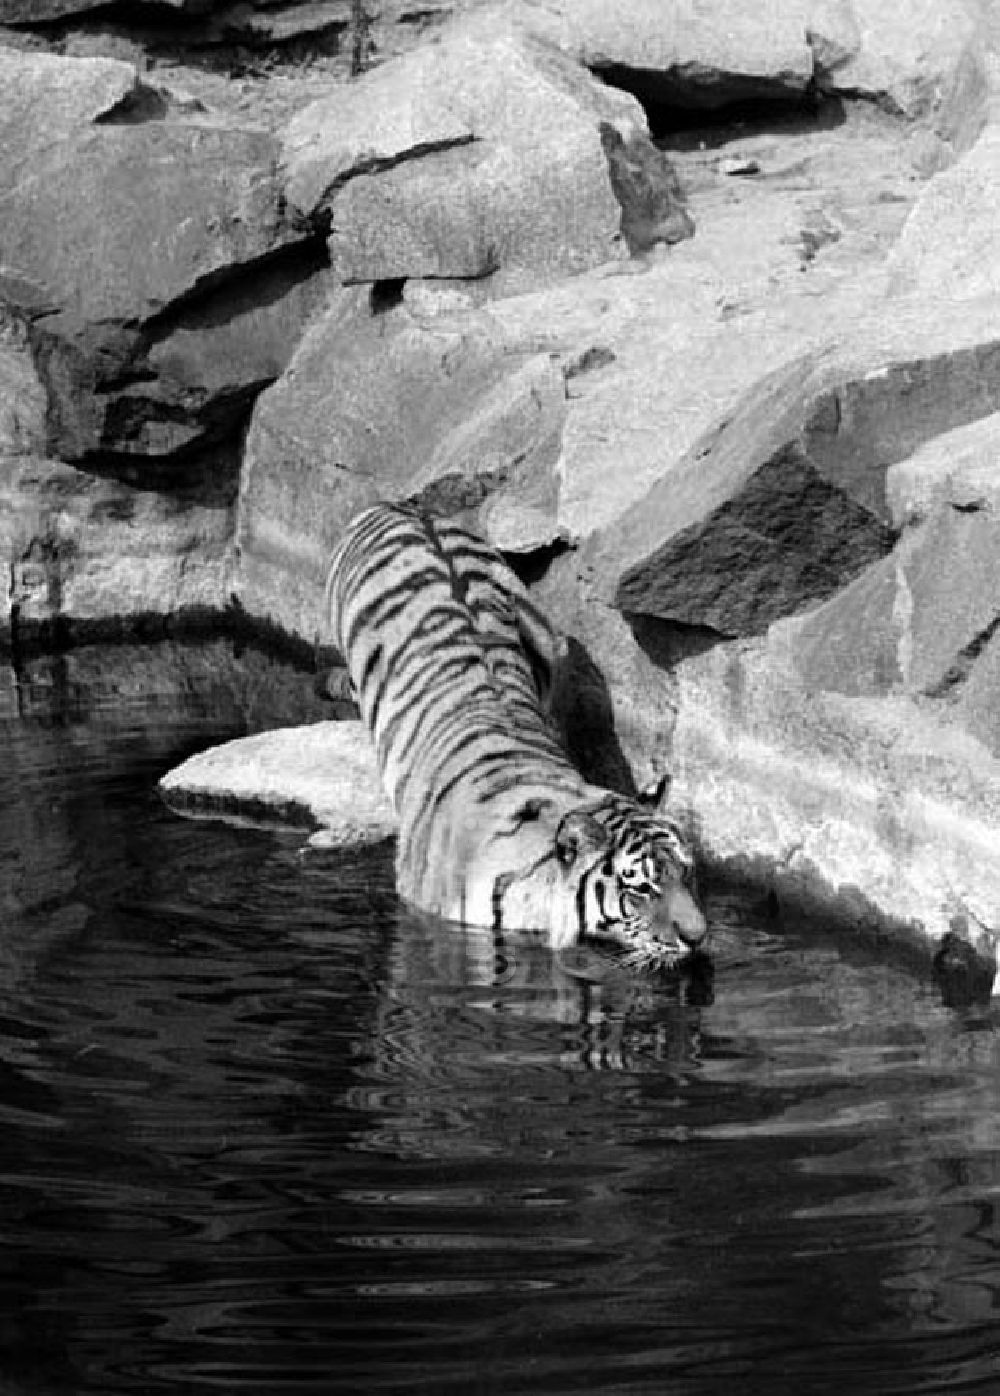 DDR-Fotoarchiv: Berlin - August 1973 Tiger im Tierpark.